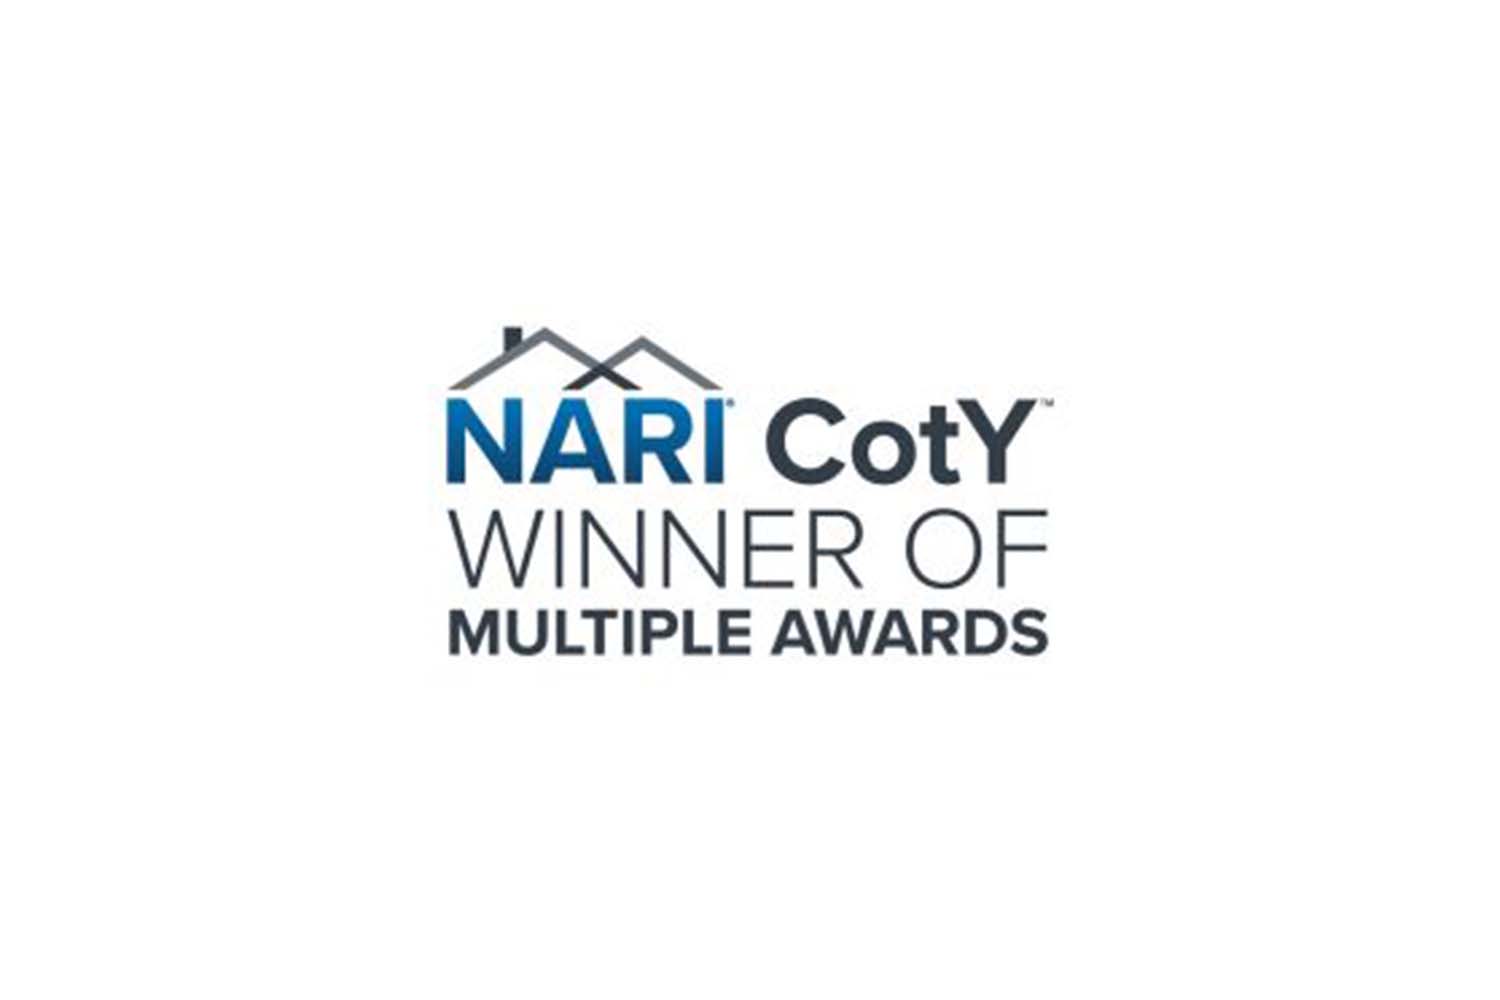 NARI CotY Winner of Multiple Awards 